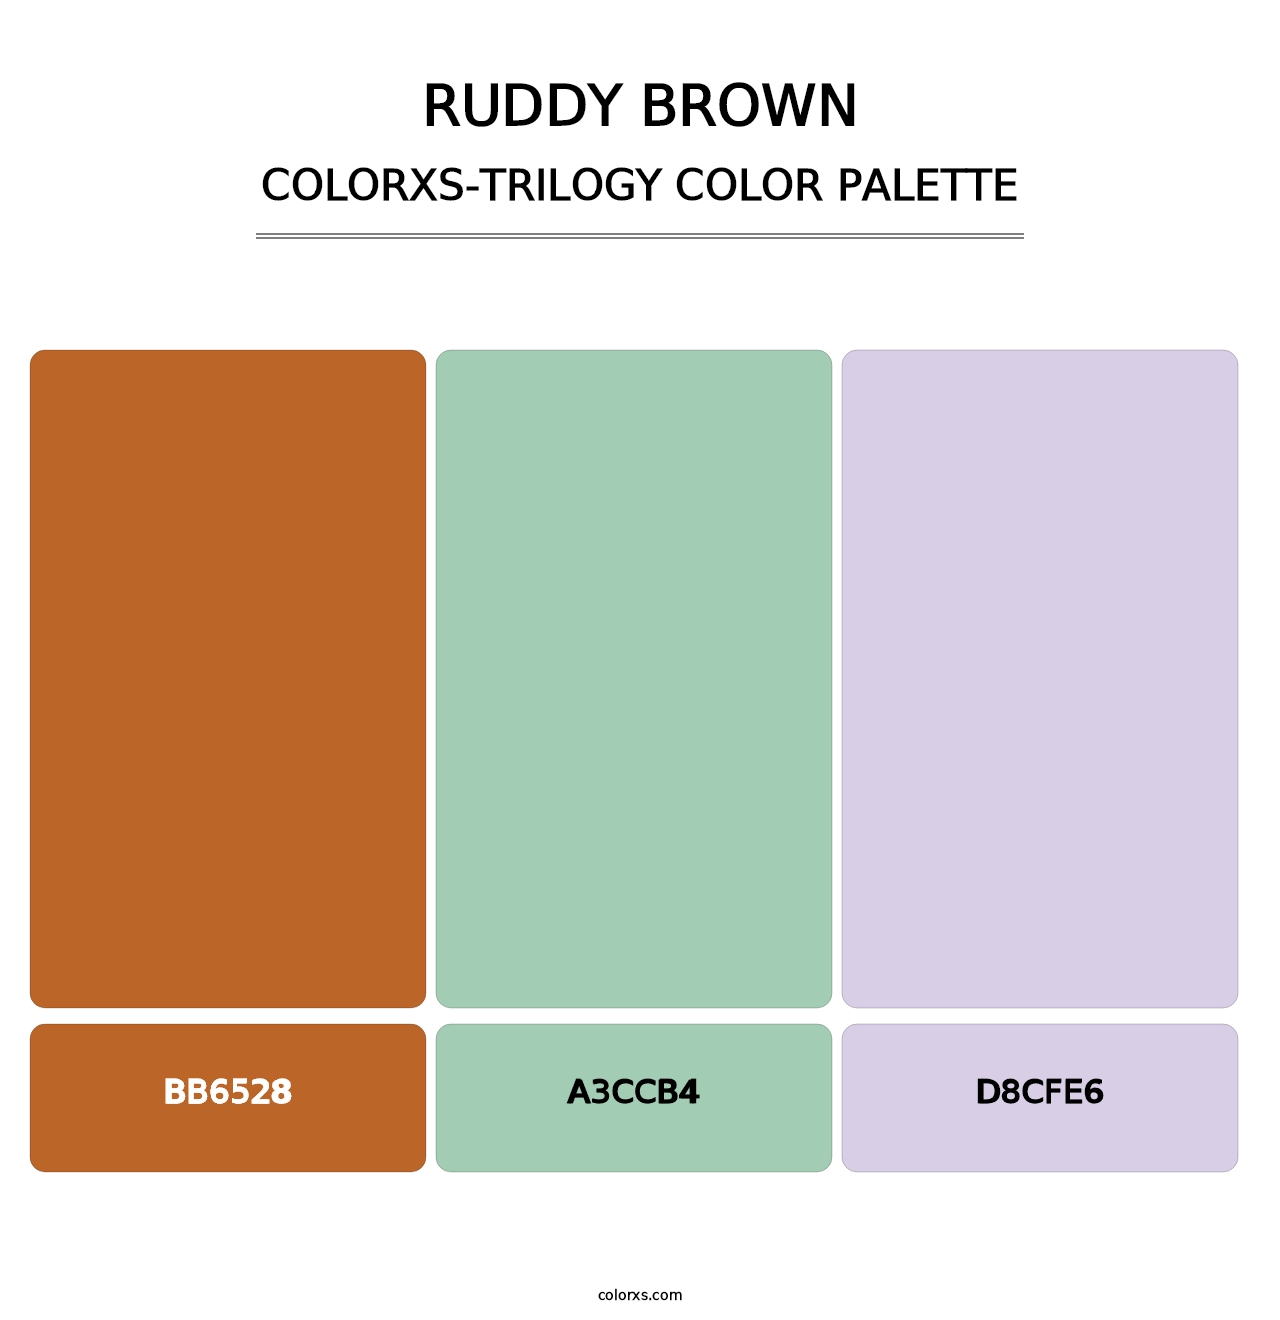 Ruddy Brown - Colorxs Trilogy Palette